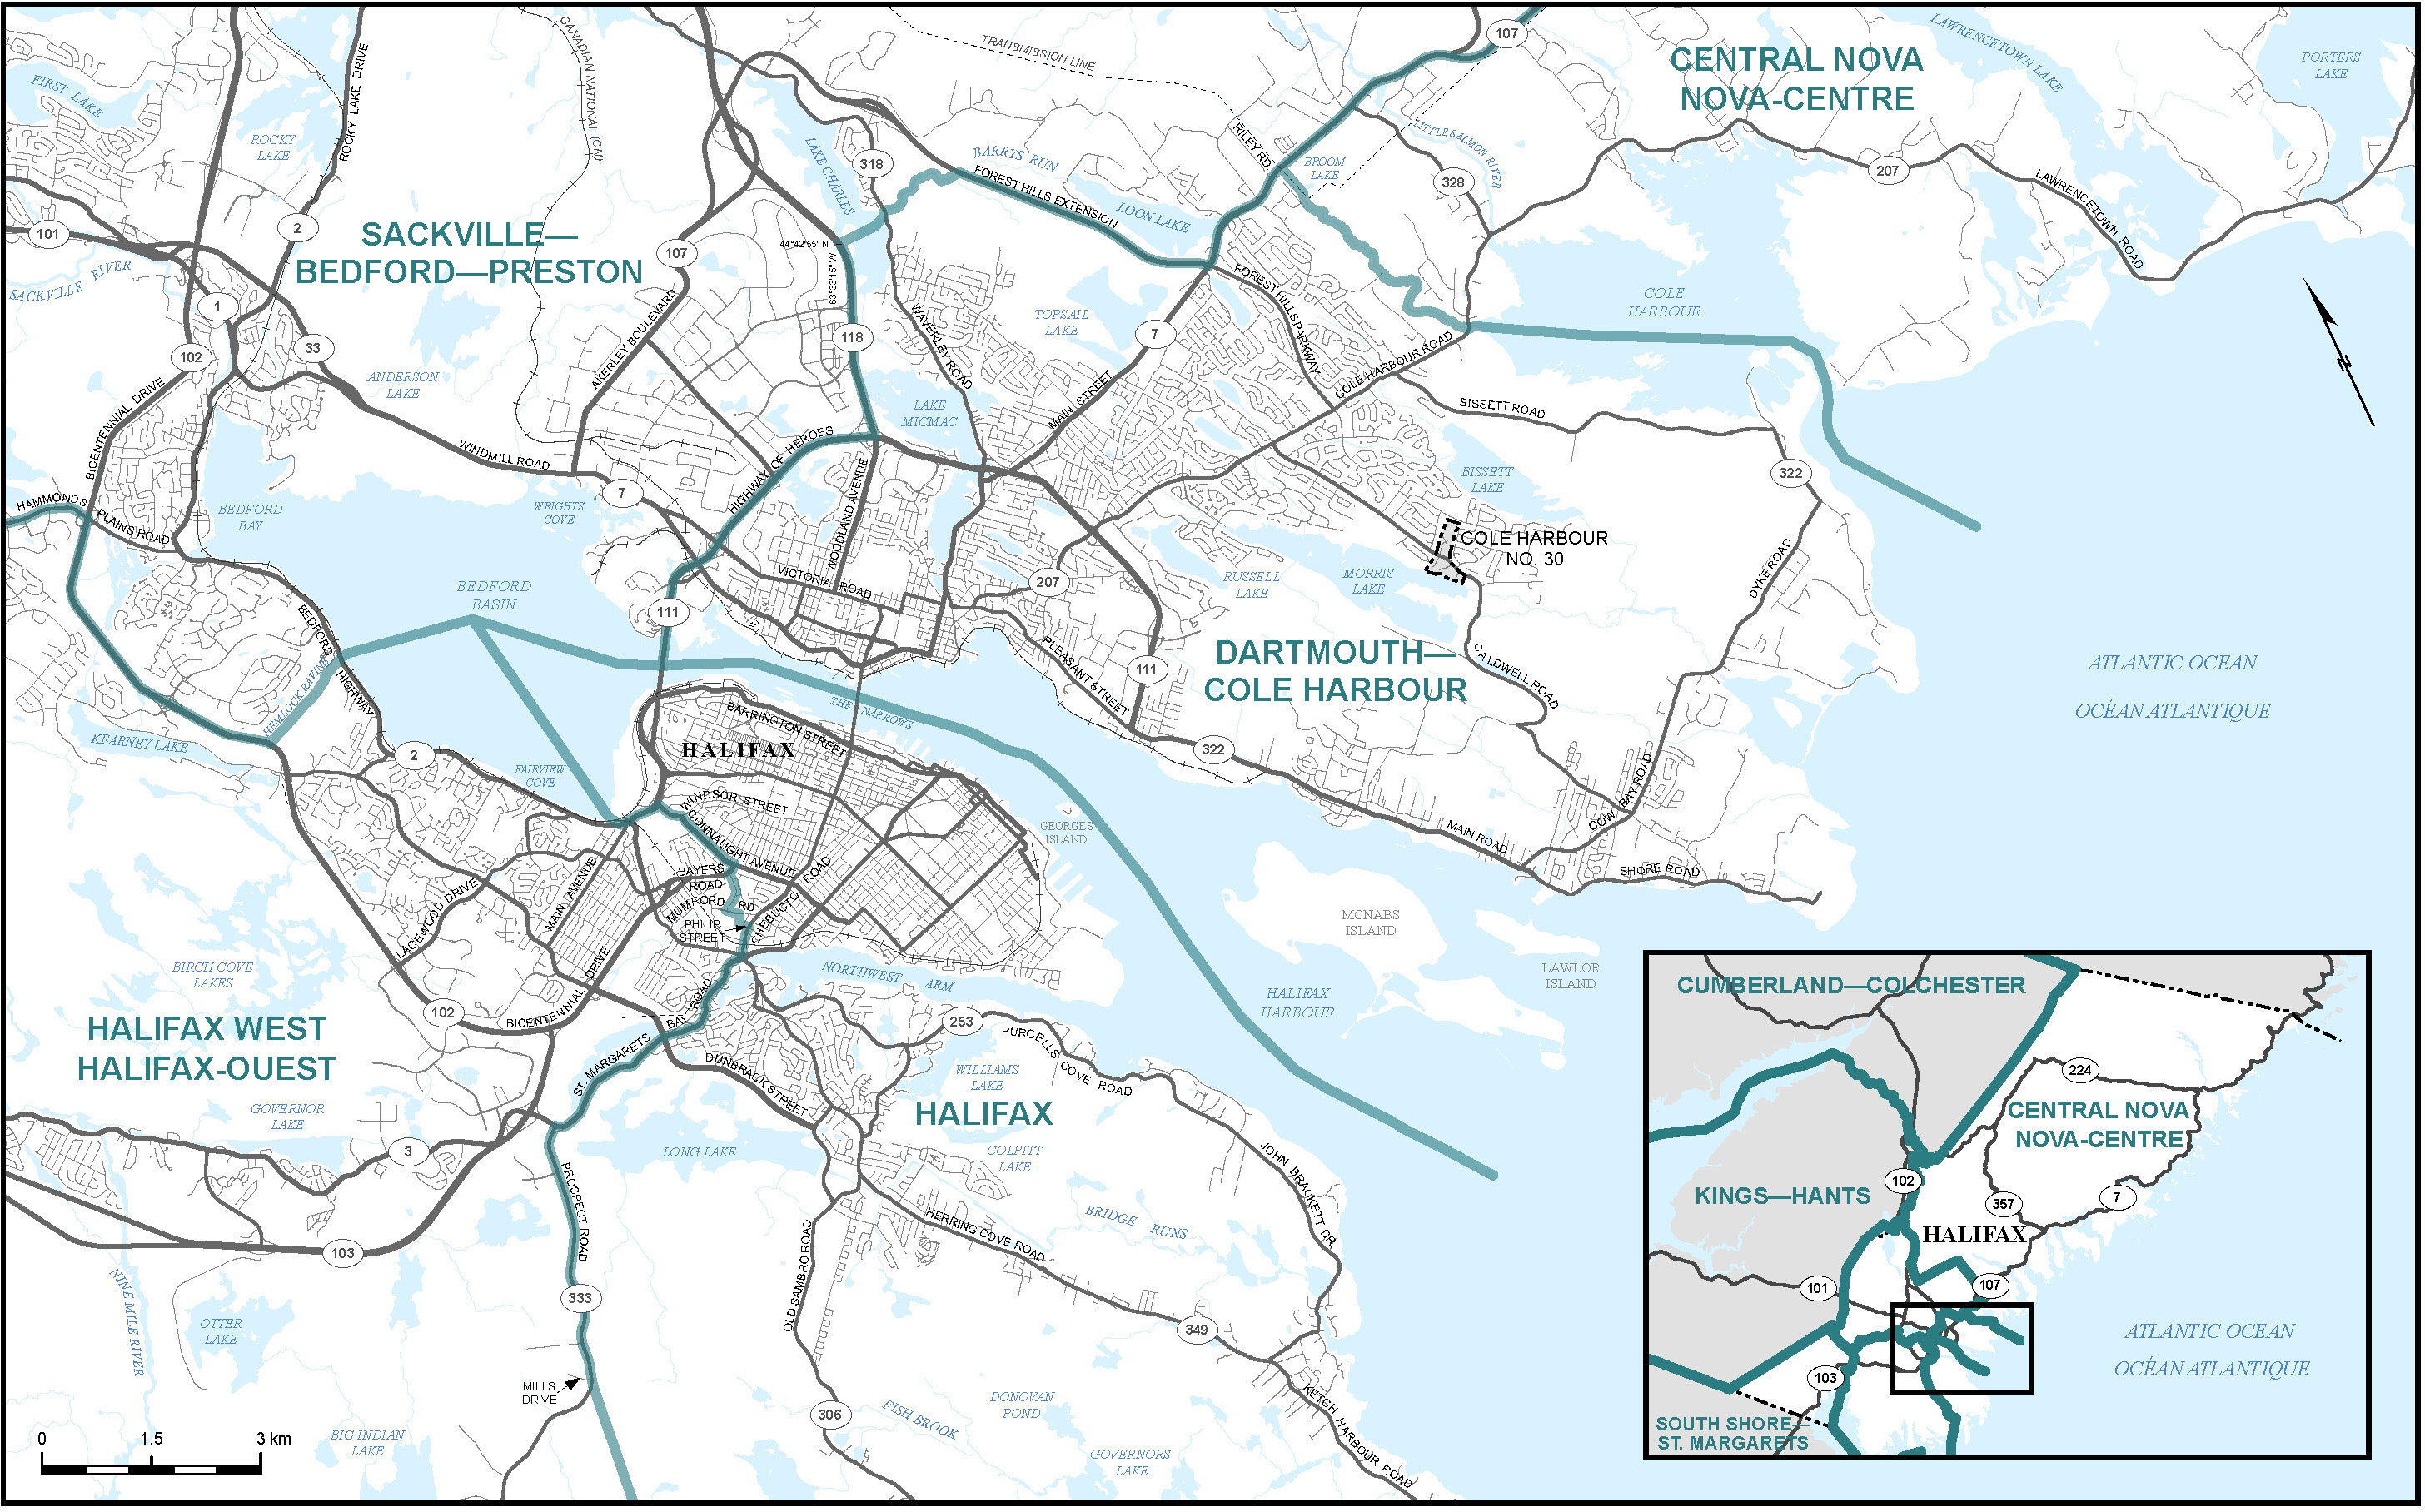 Carte de la ville de Halifax (carte 2)